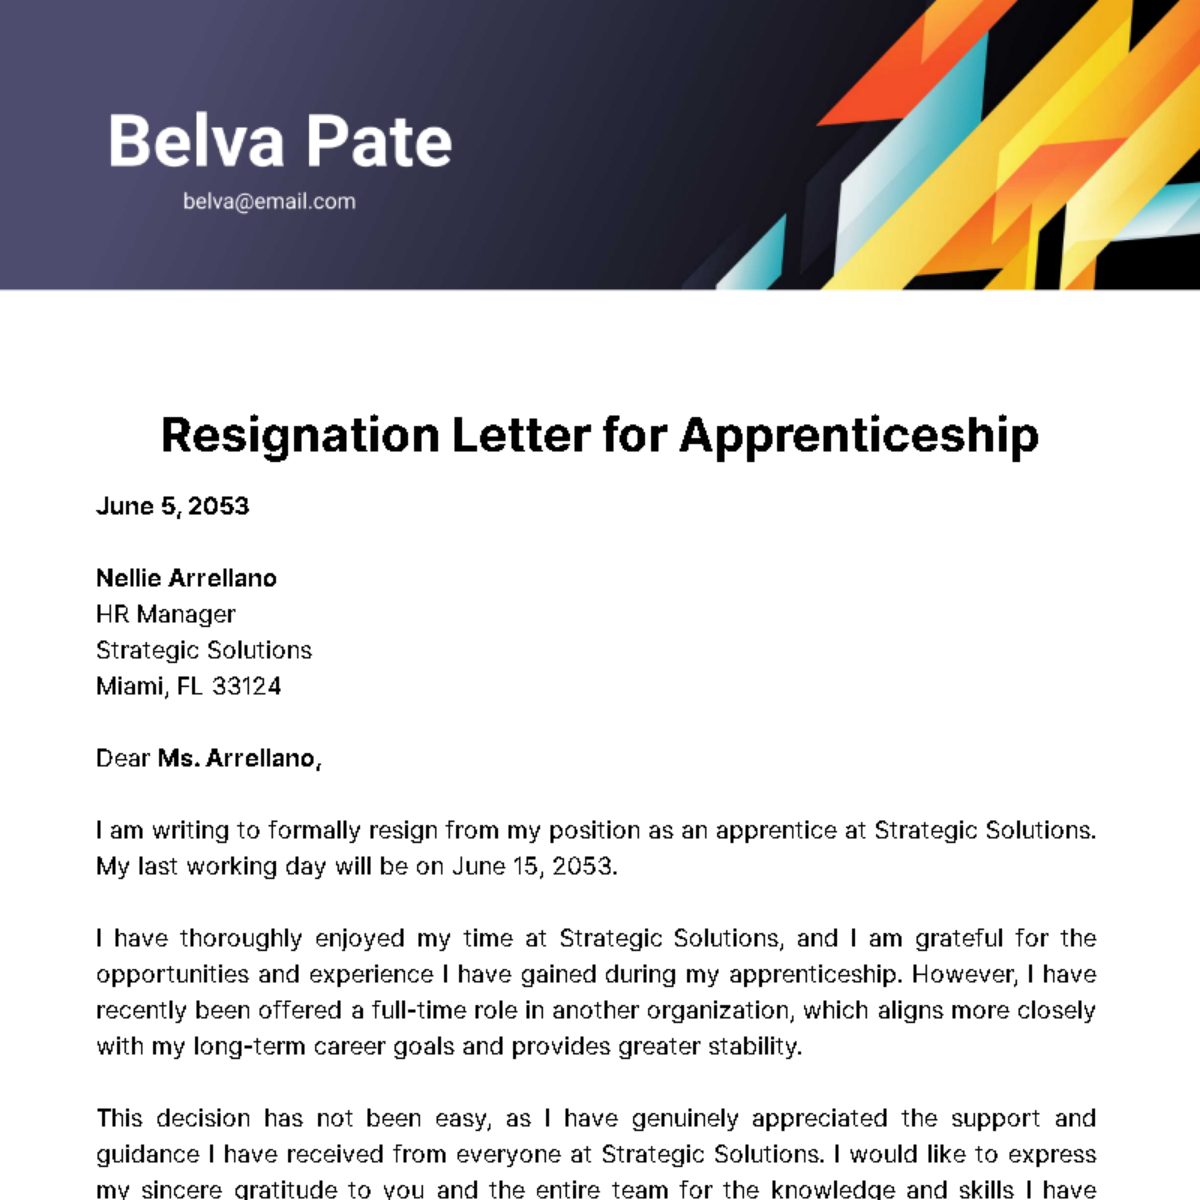 Resignation Letter for Apprenticeship Template